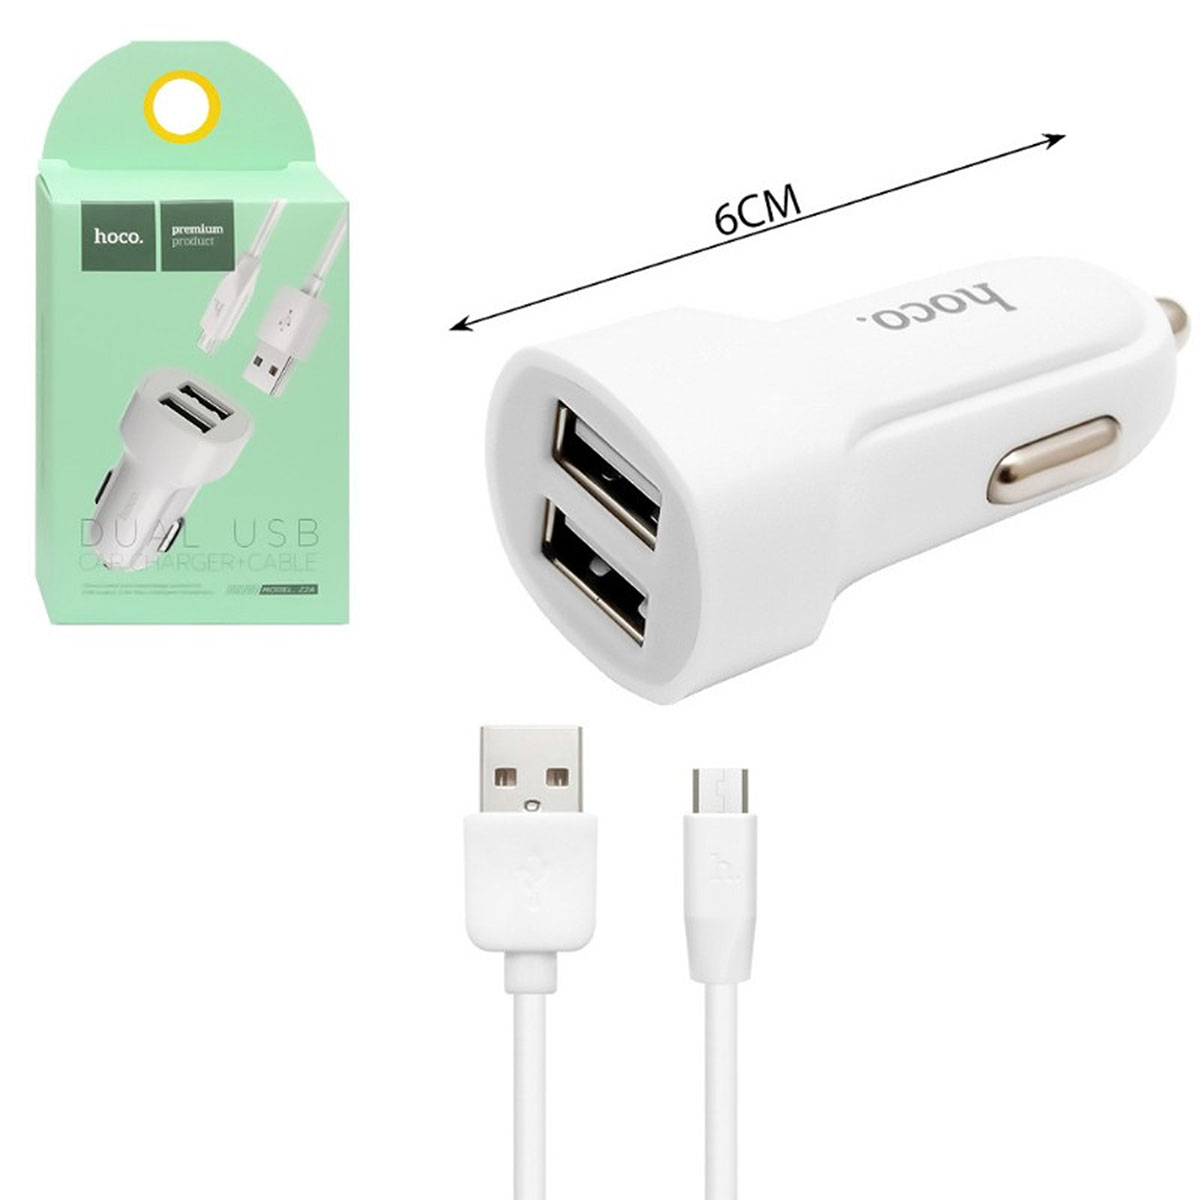 АЗУ (Автомобильное зарядное устройство) + кабель Micro USB HOCO X1, длина 1 метр, HOCO Z2A, цвет белый.